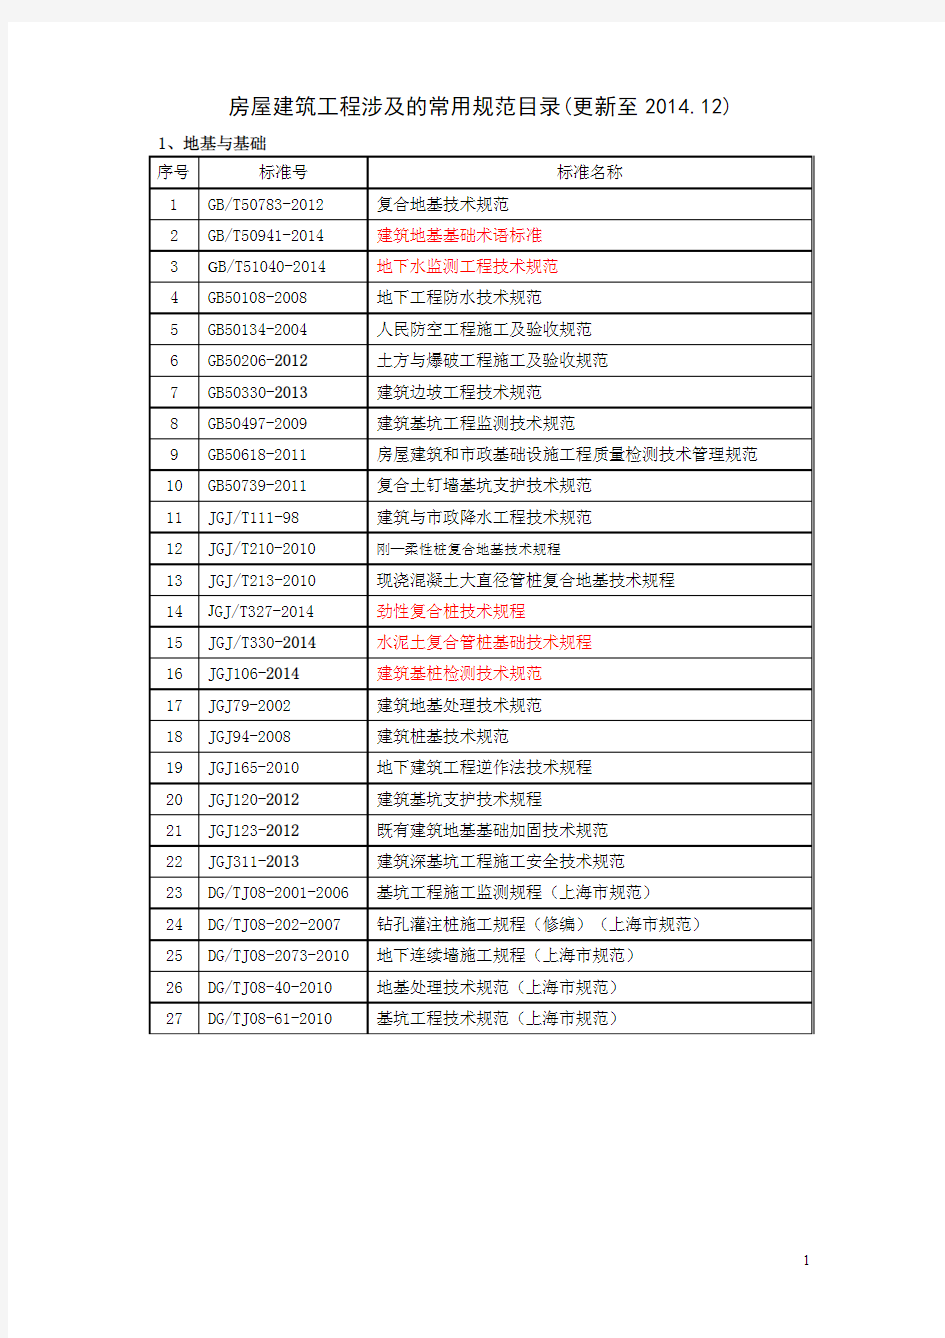 房屋建筑工程涉及的常用规范(含上海市)目录 _更新至2014.12_